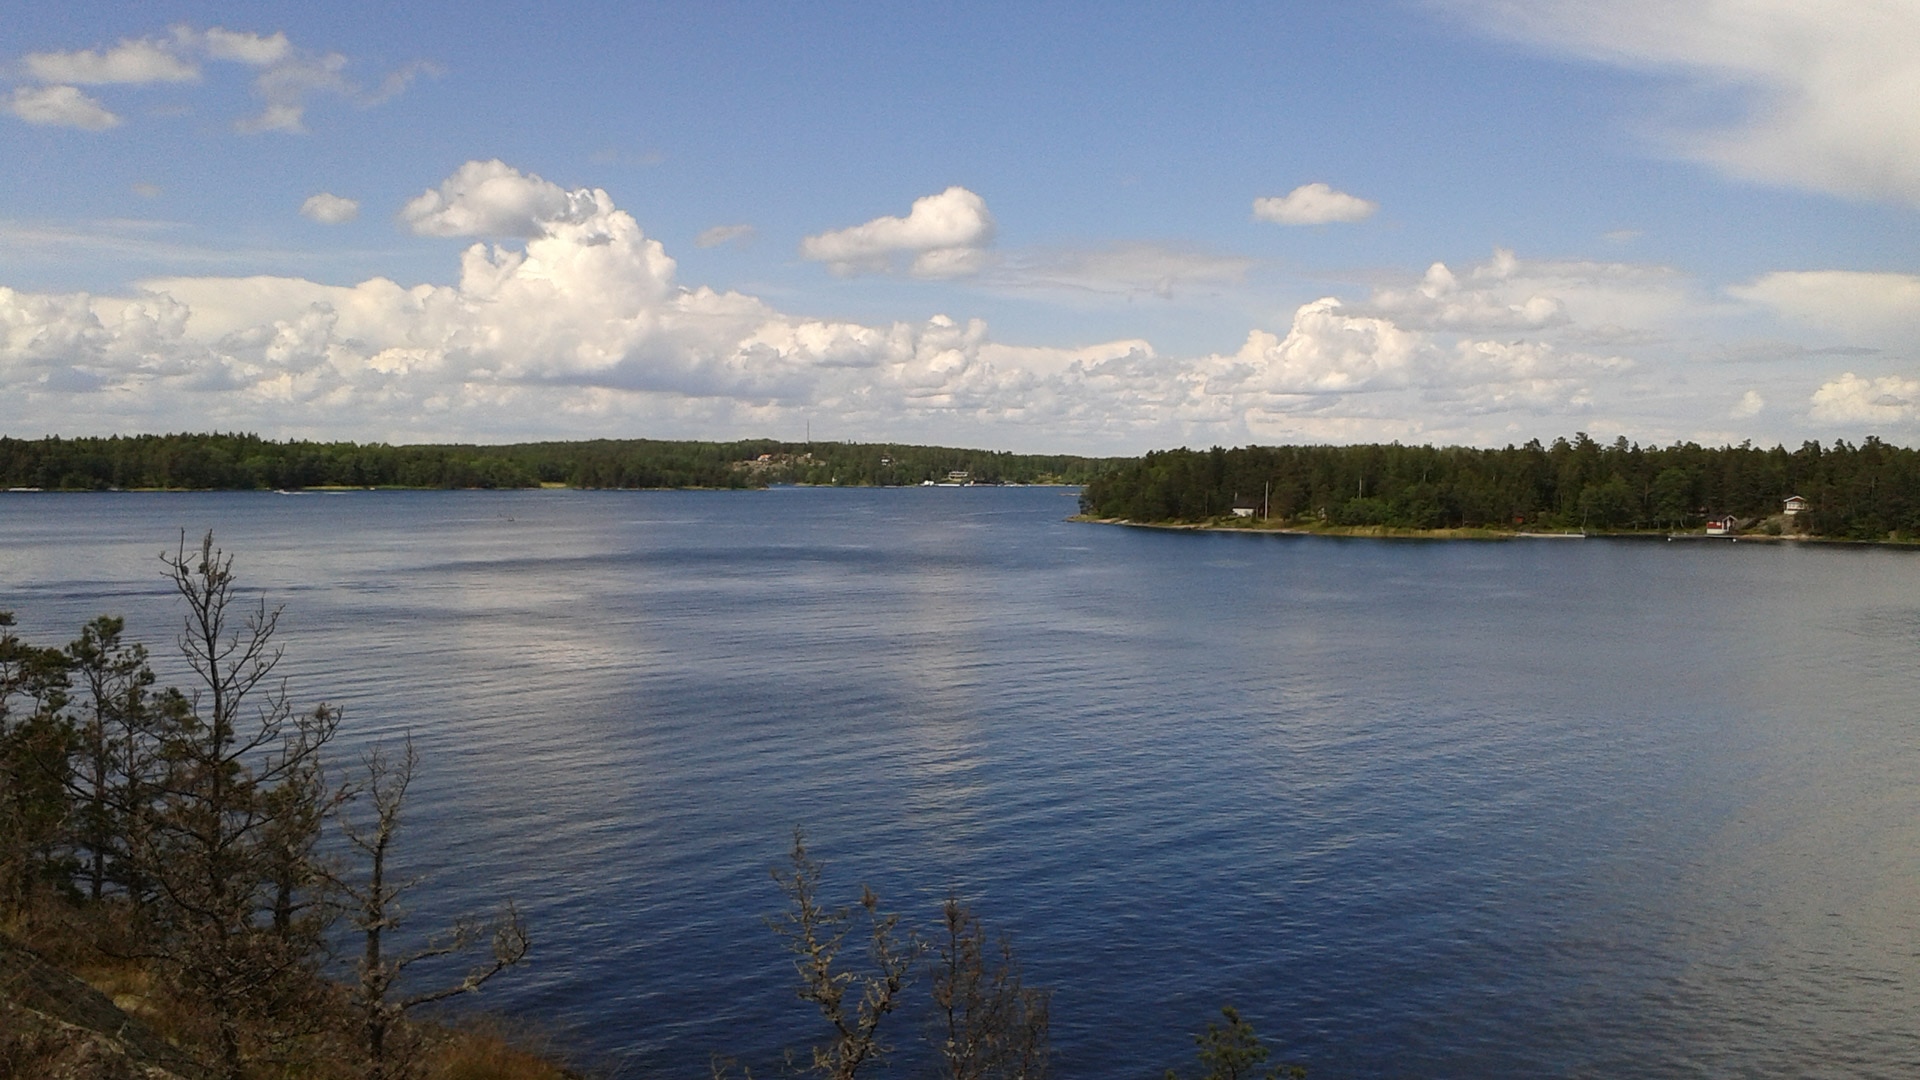 Beautiful landscape in Sweden